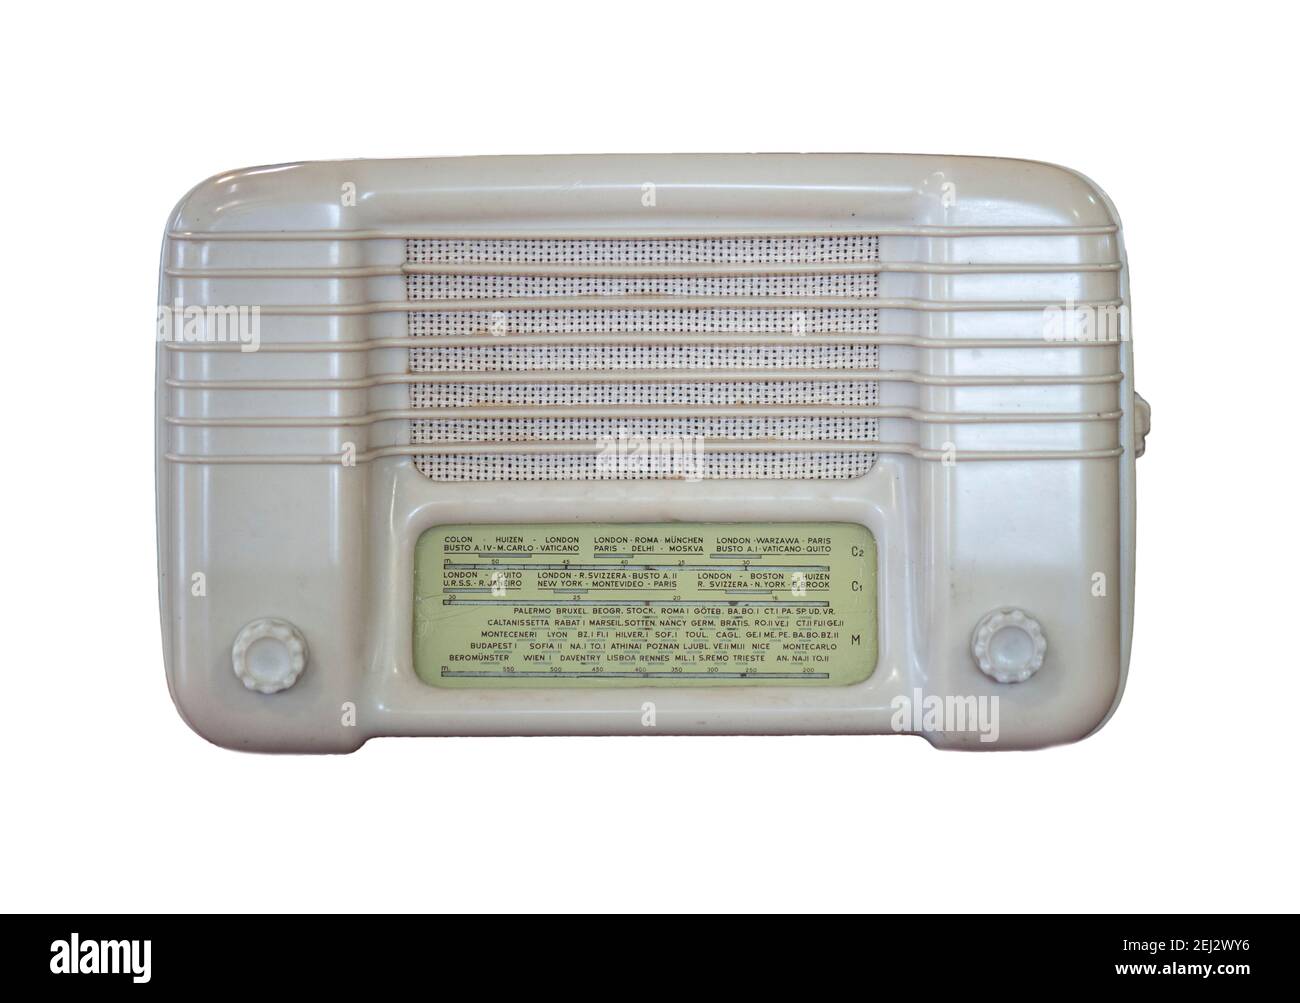 Radios antiguos Imágenes recortadas de stock - Alamy